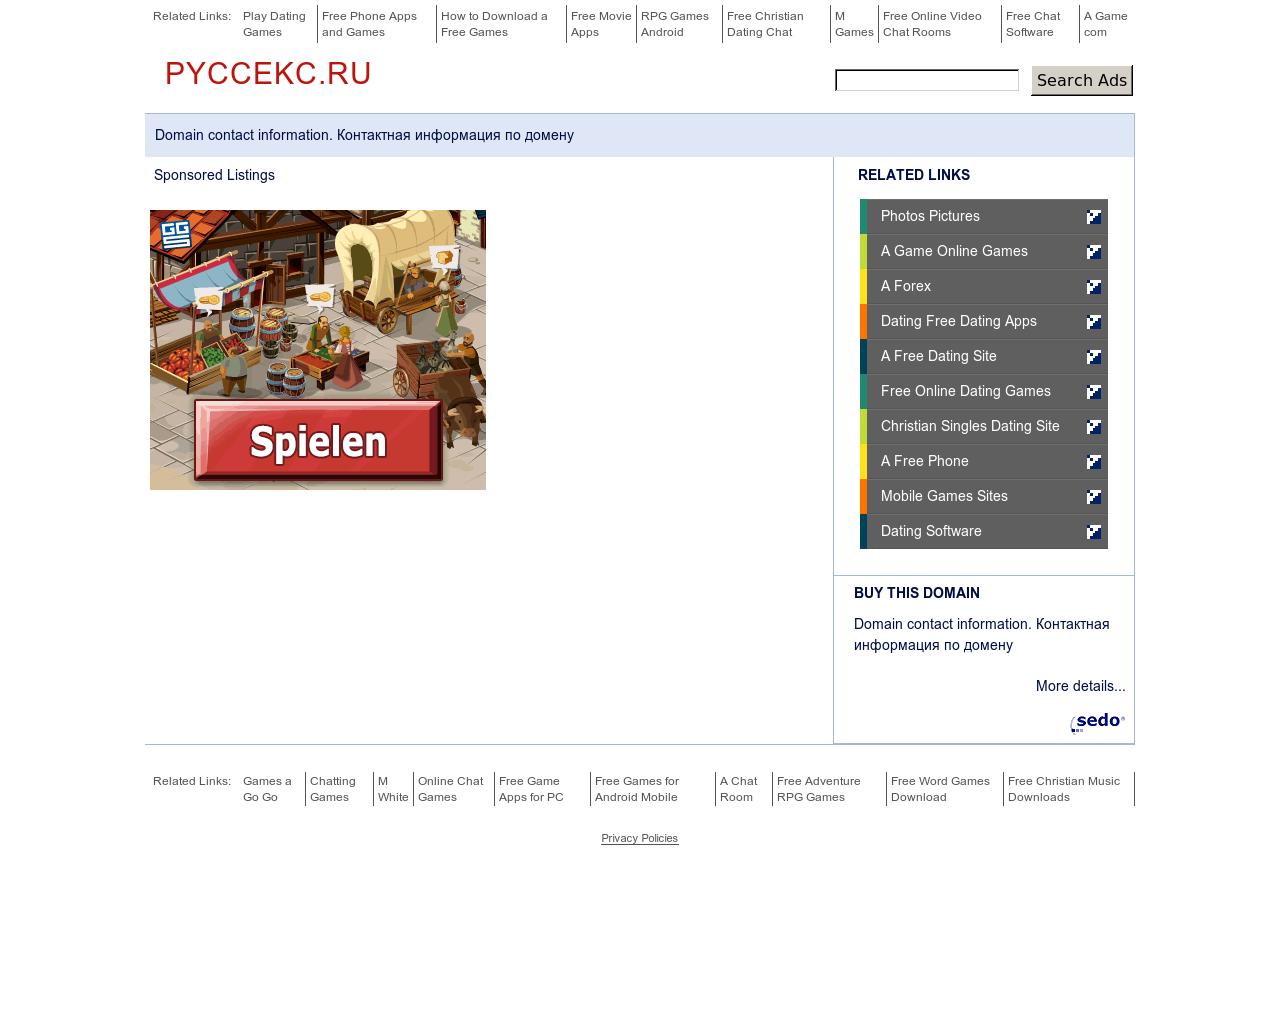 Изображение сайта pyccekc.ru в разрешении 1280x1024